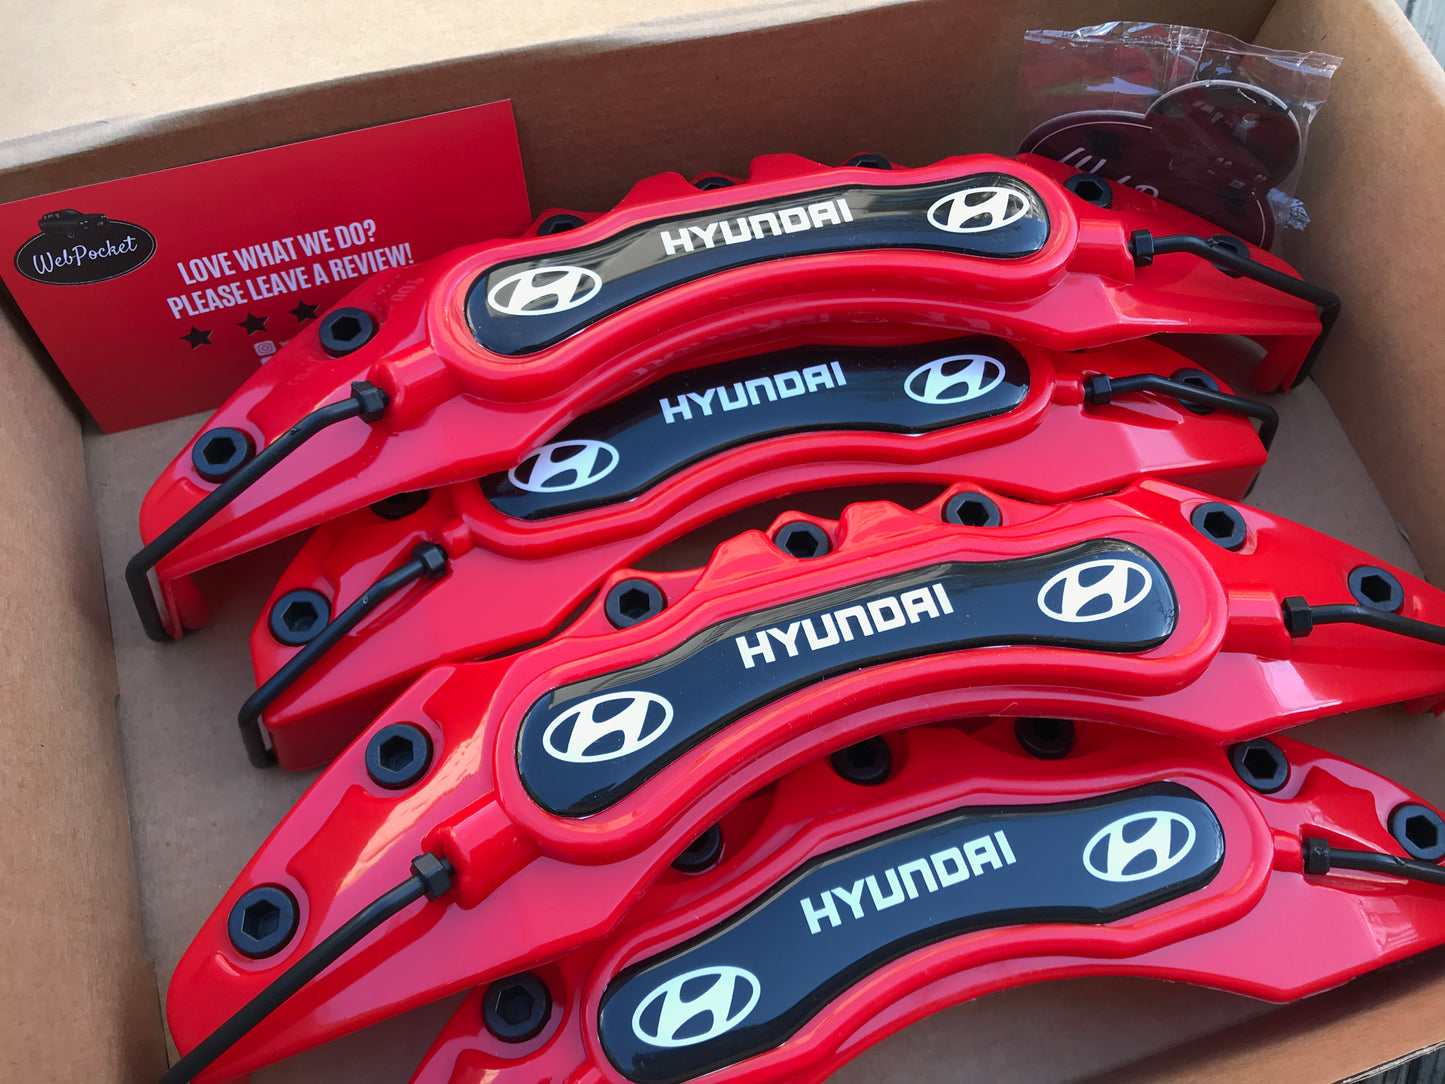 4pc Hyundai Brake Caliper Covers Red/ Car Accessories